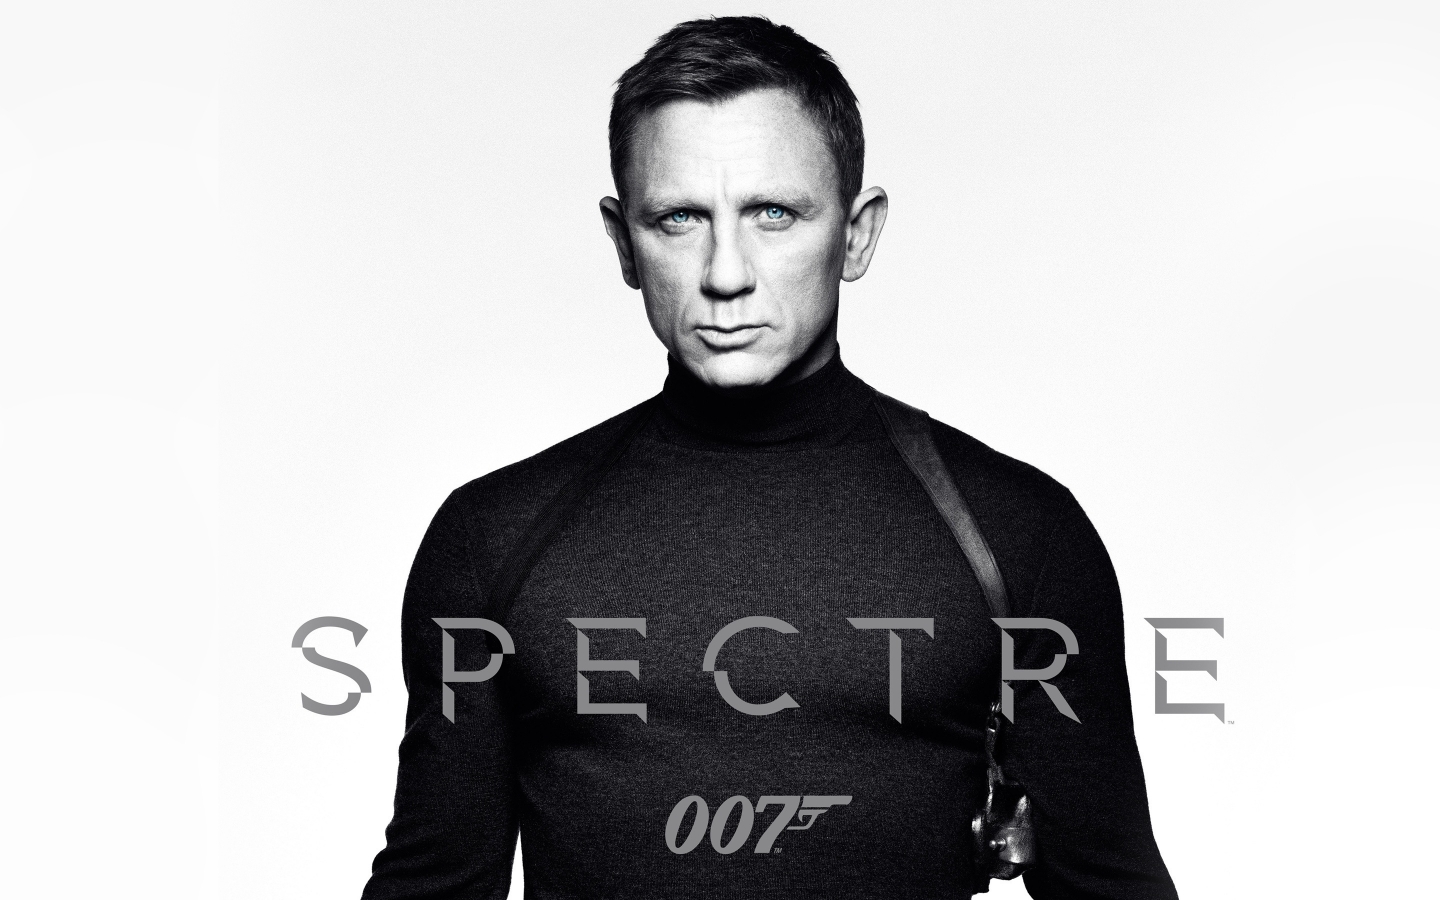 Spectre James Bond 007 for 1440 x 900 widescreen resolution